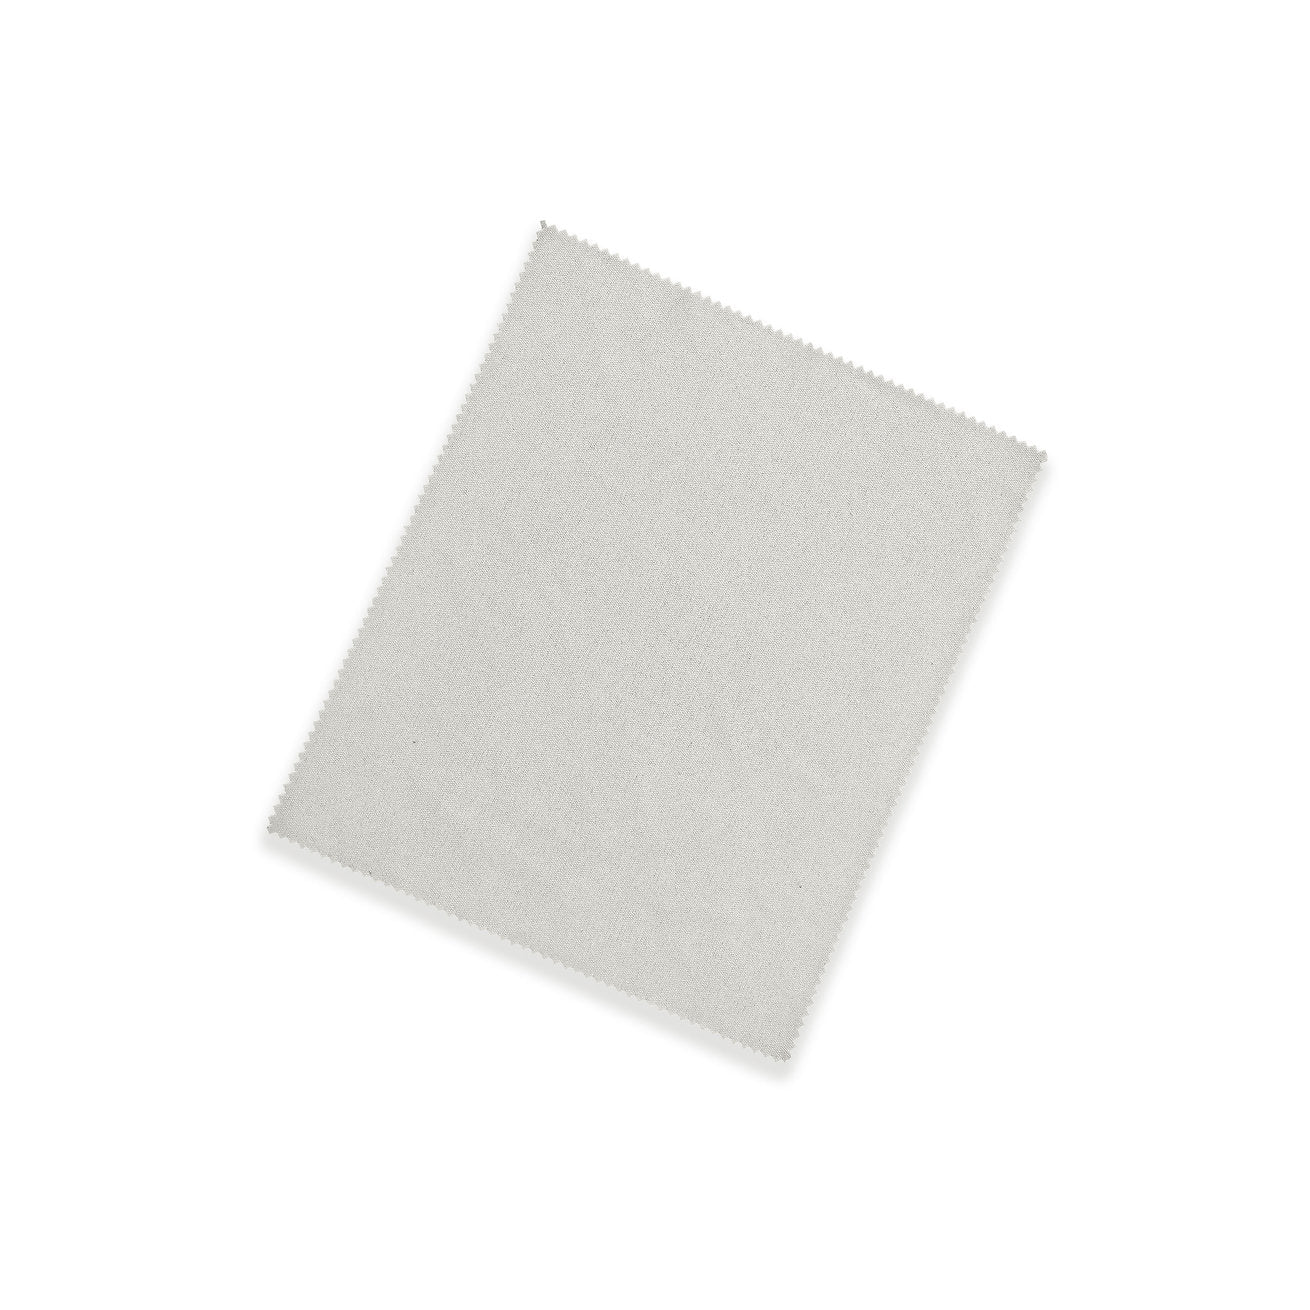 White microfiber cloth